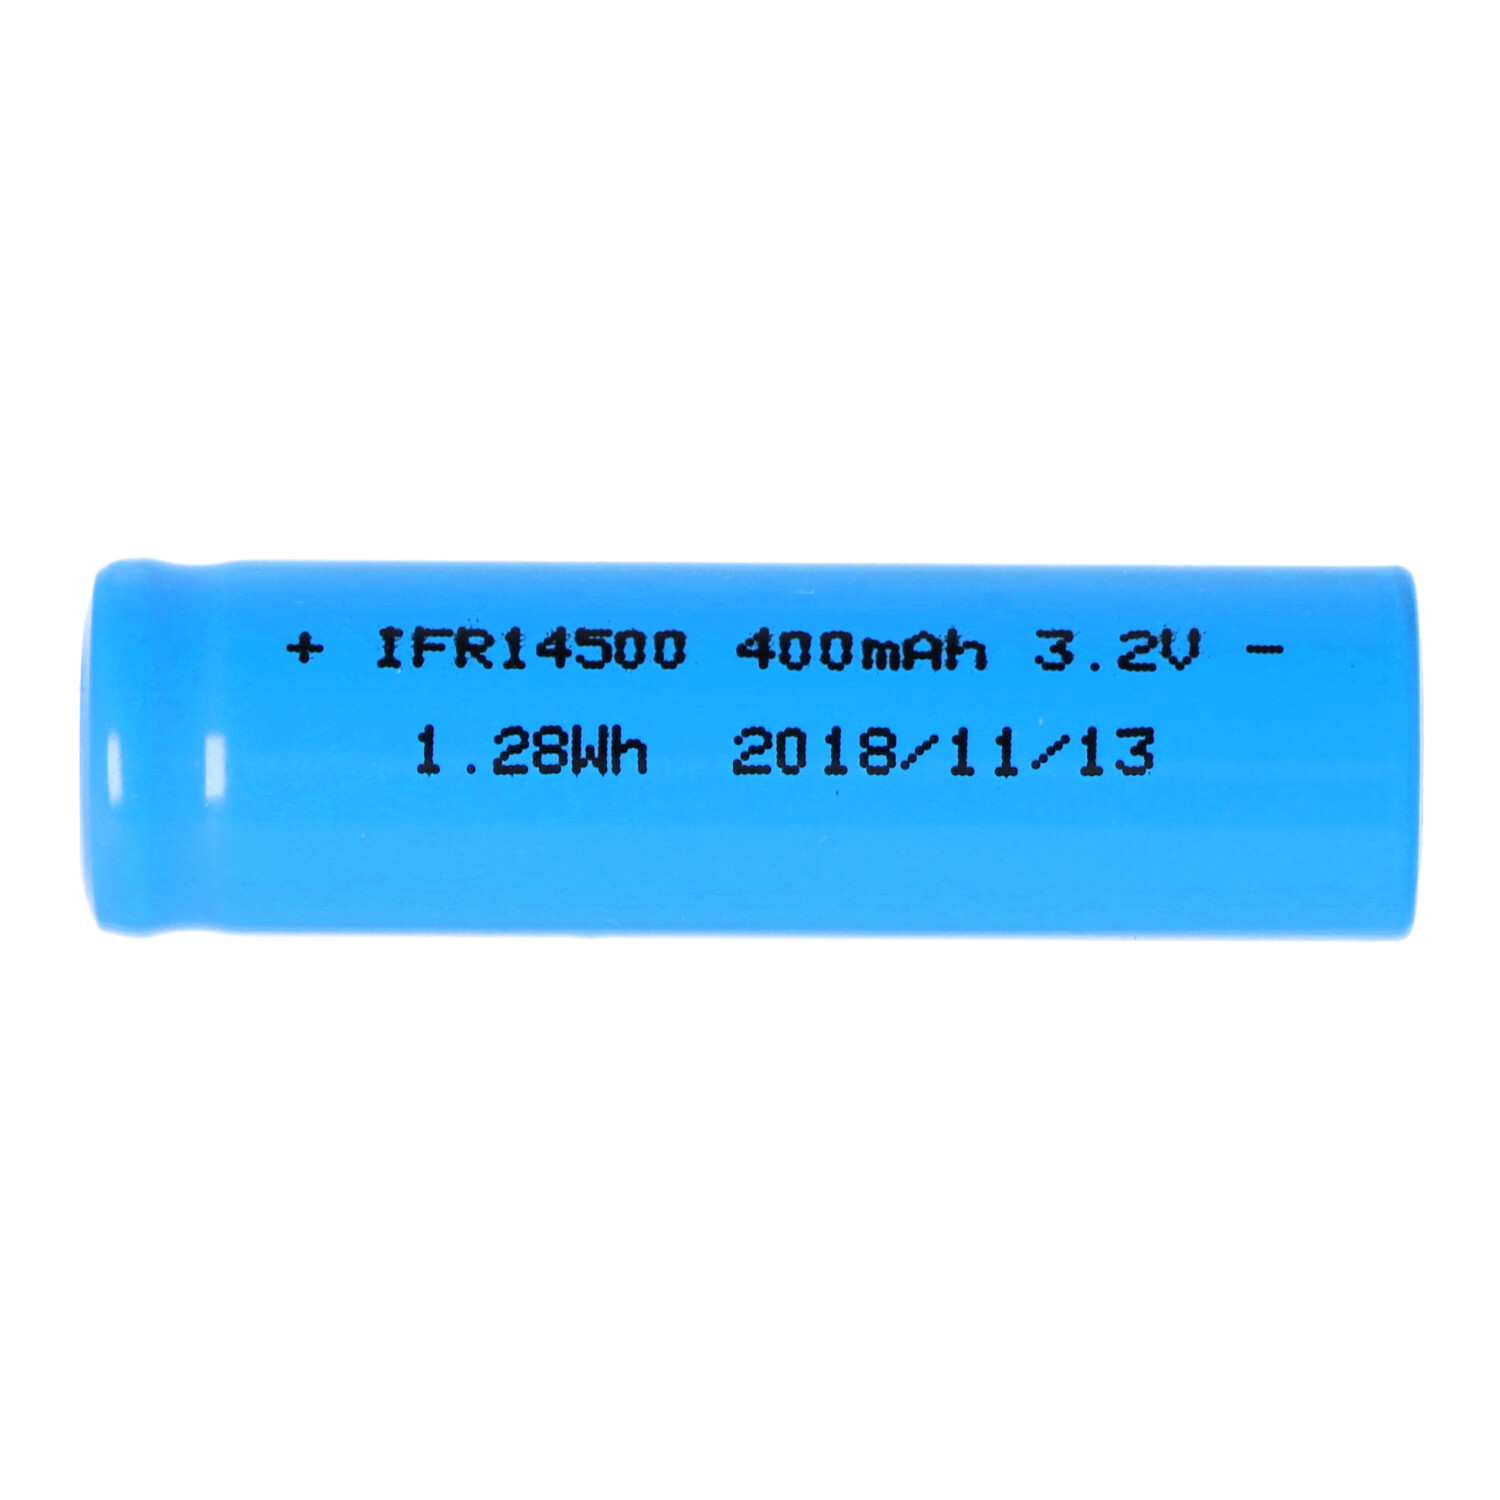 IFR14500 - 400mAh AA LiFePo4 Akku 3,2V mit Flat Top (ohne Kopf) flacher Pluspol, Maße 49,8x14,2mm